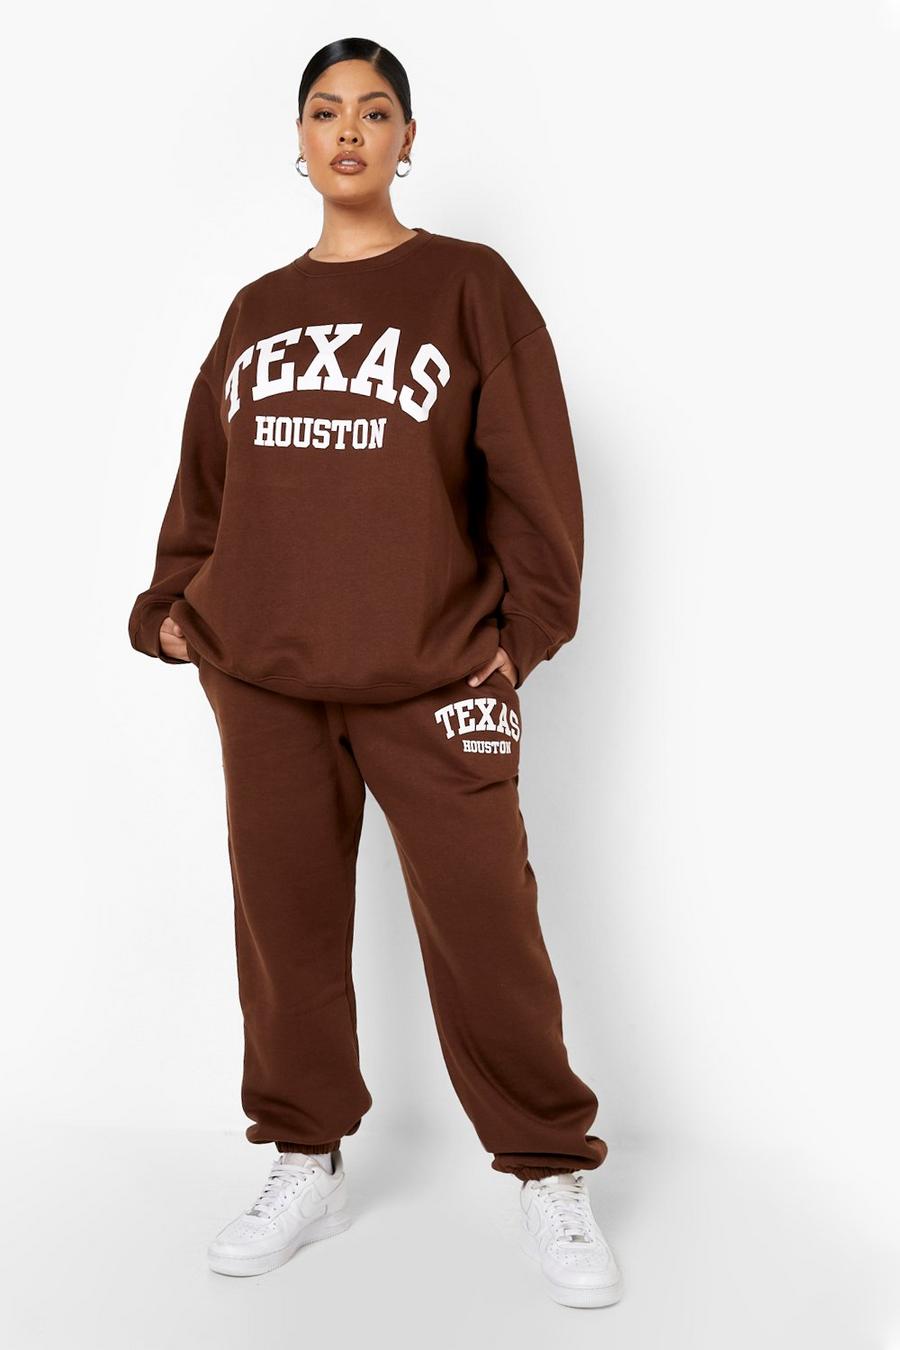 שוקולד marrón מכנסי ריצה אוברסייז עם כיתוב Texas, מידות גדולות